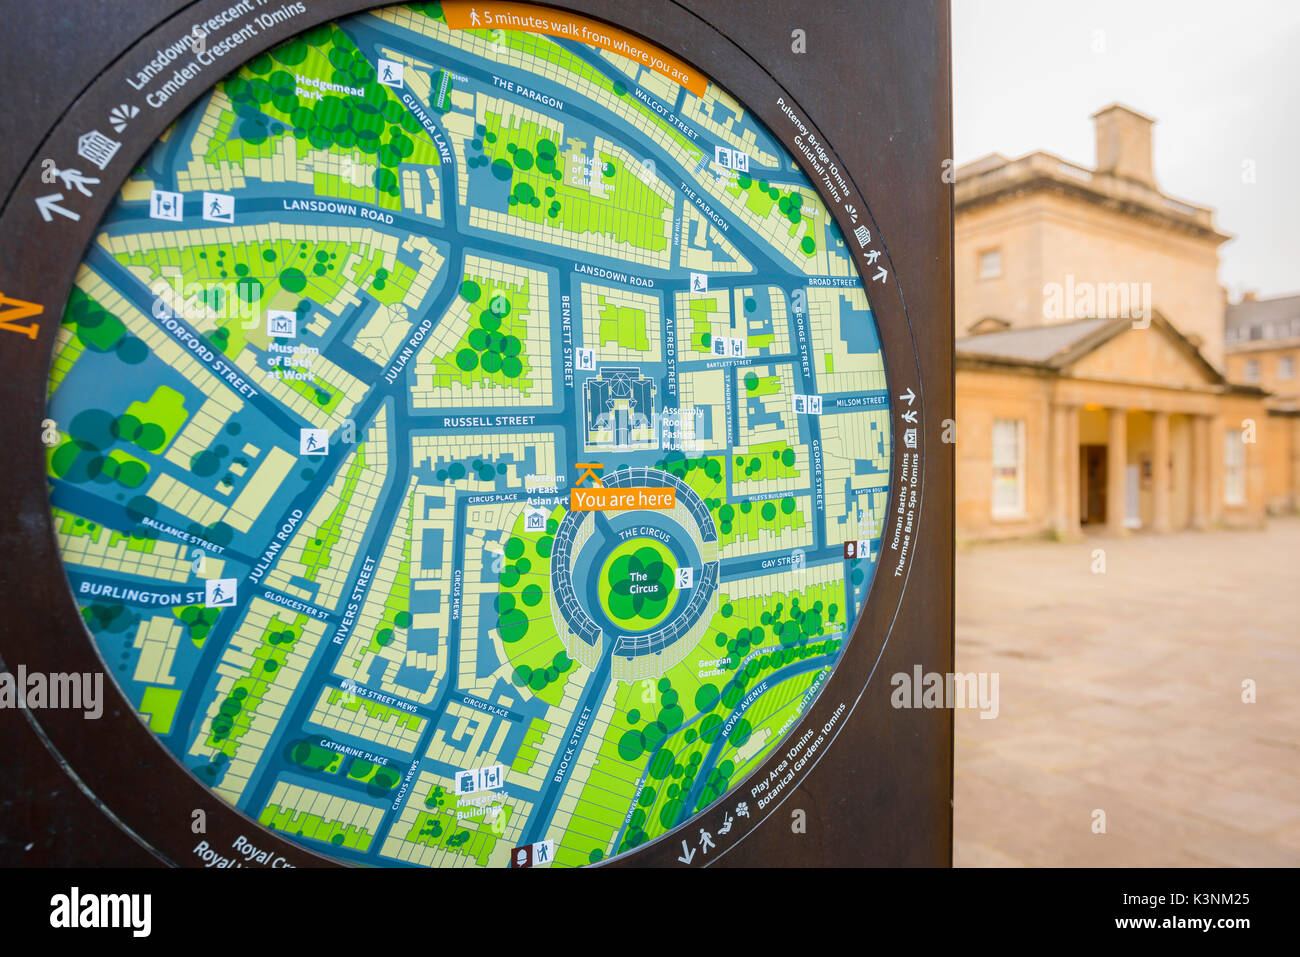 Bath UK City, vue sur une grande carte municipale située près des salles d'assemblage de Bath montrant le centre de la ville, Royaume-Uni. Banque D'Images